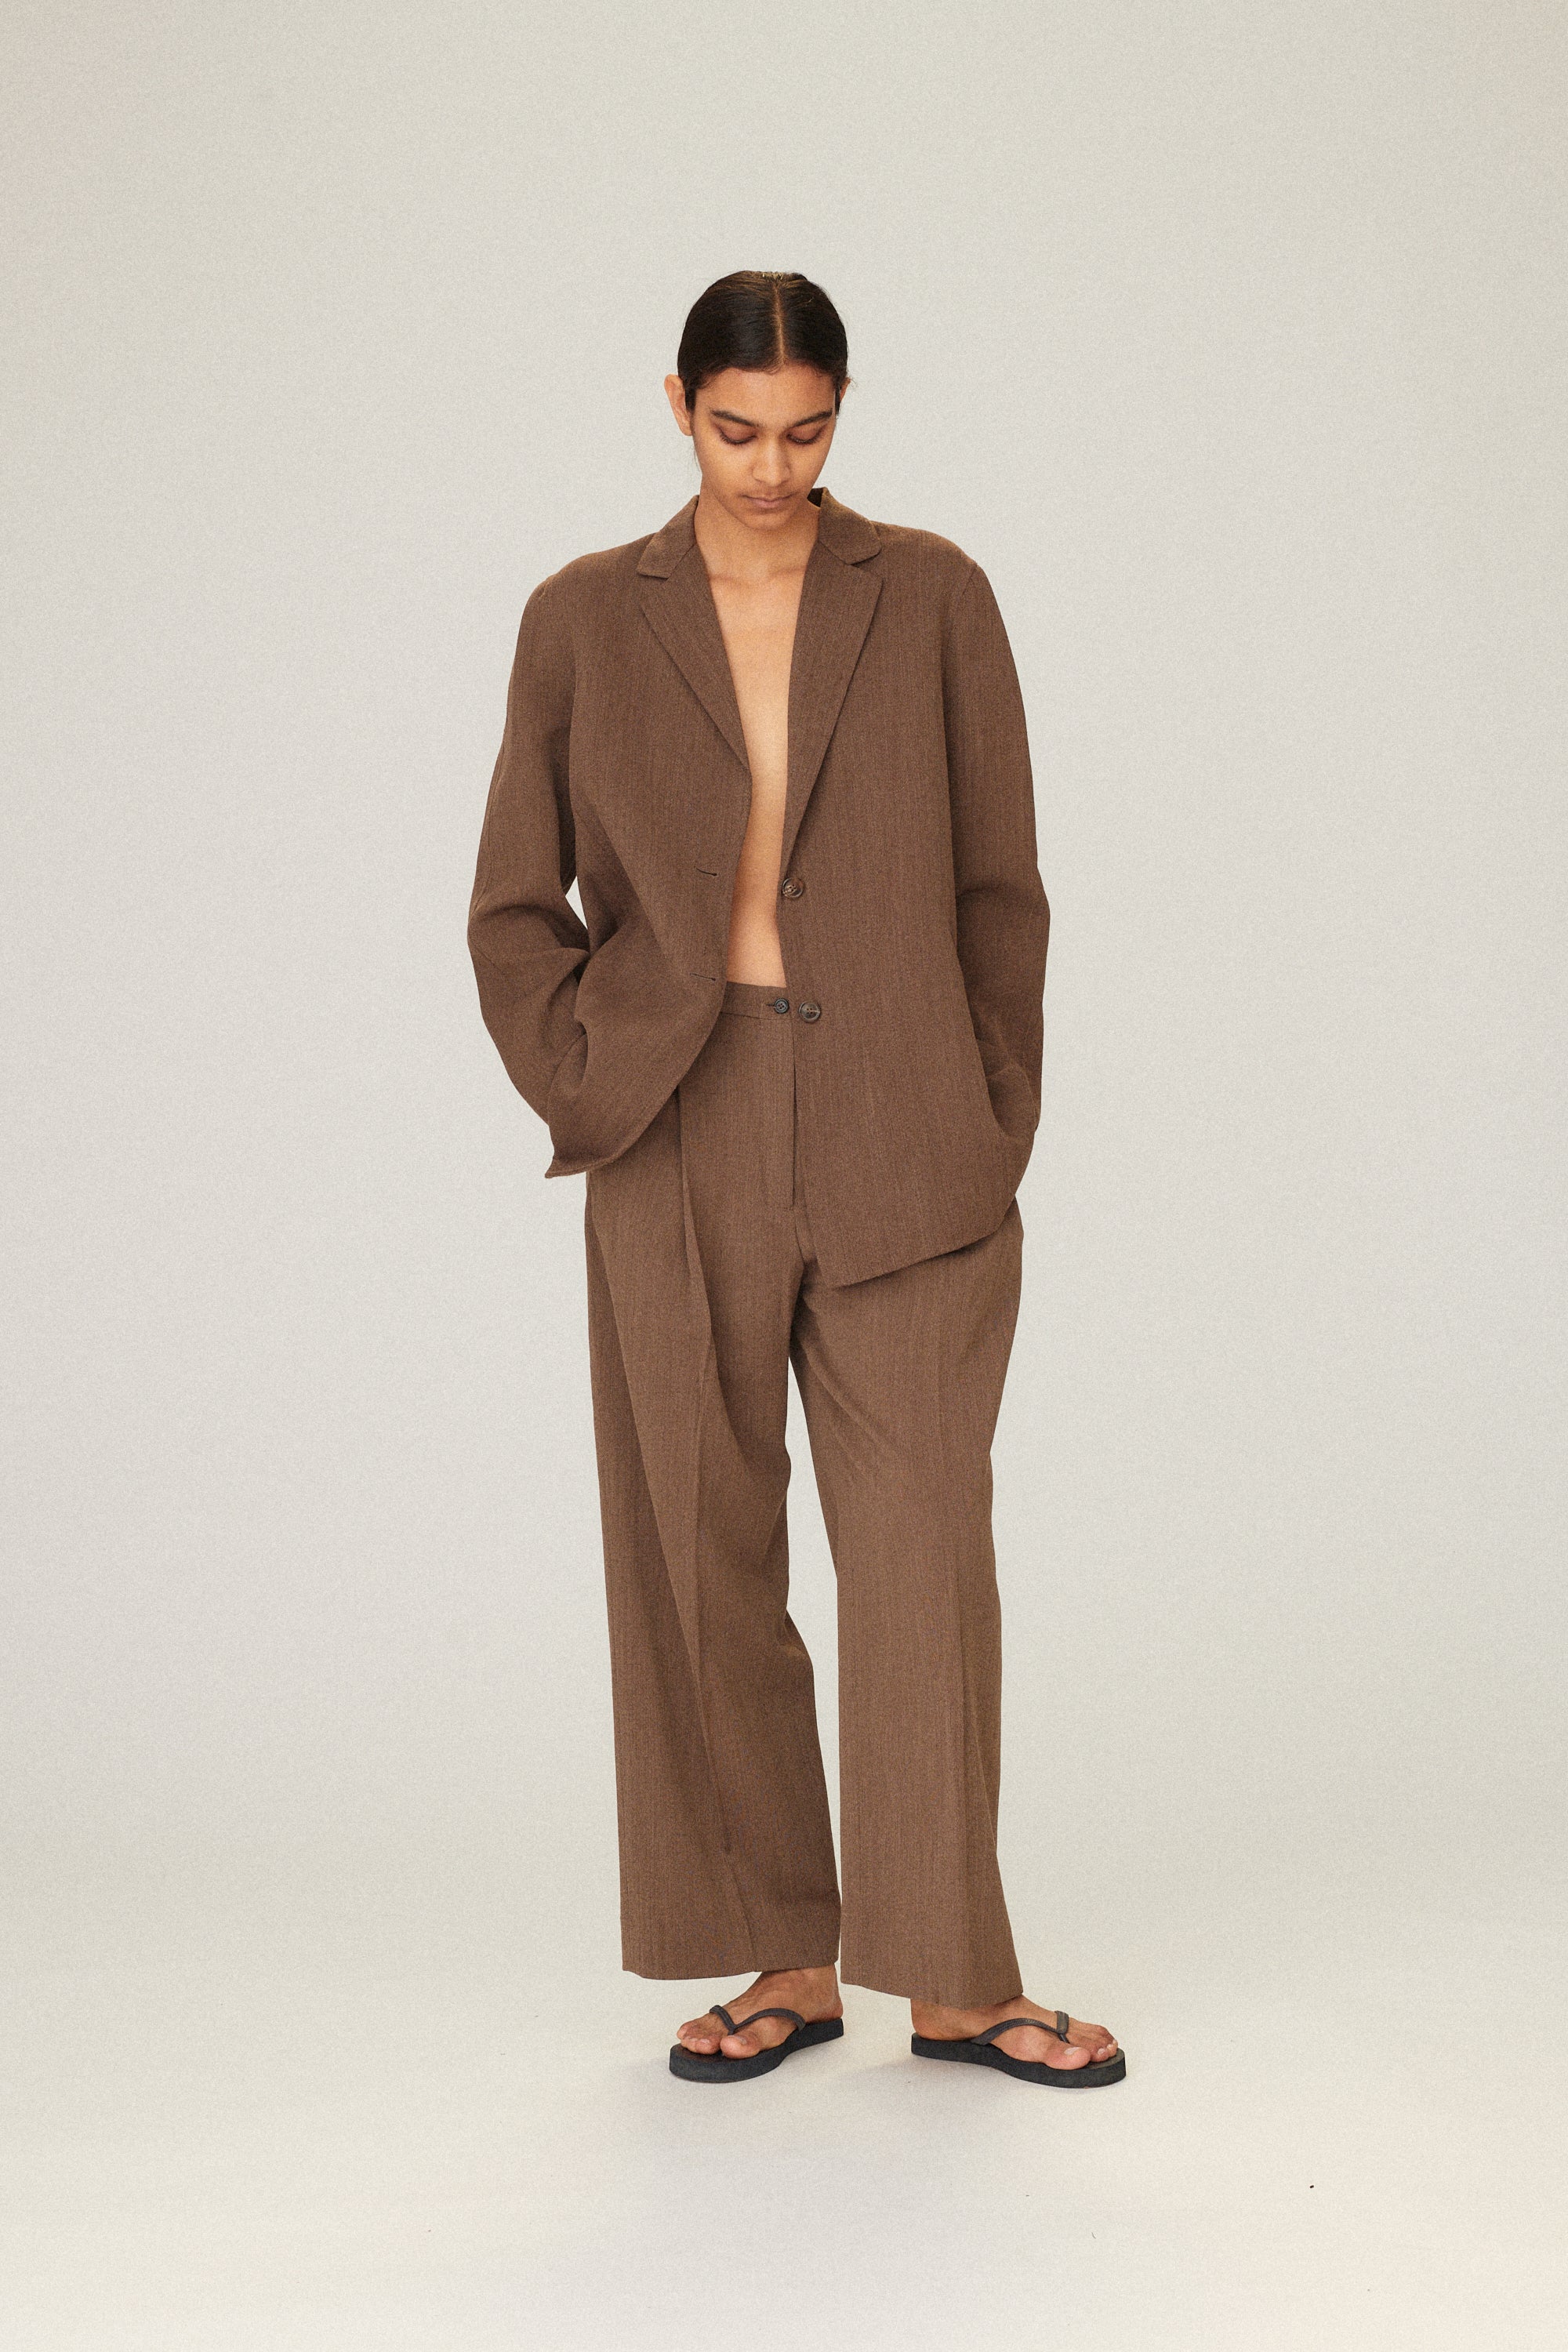 Michael Kors Suit - Desert Vintage